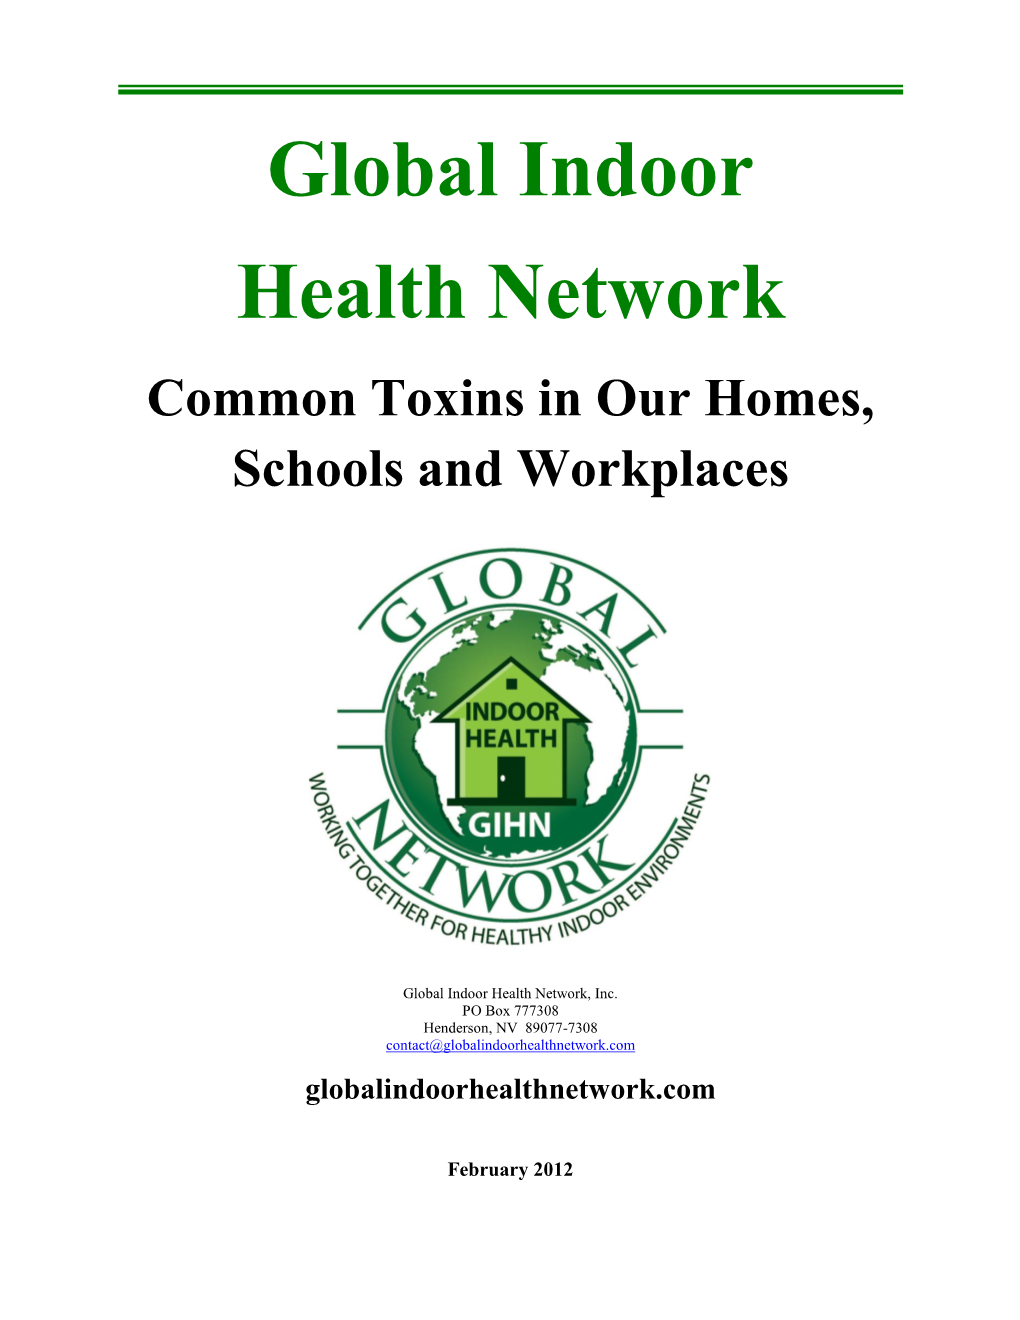 Global Indoor Health Network--Position Statement